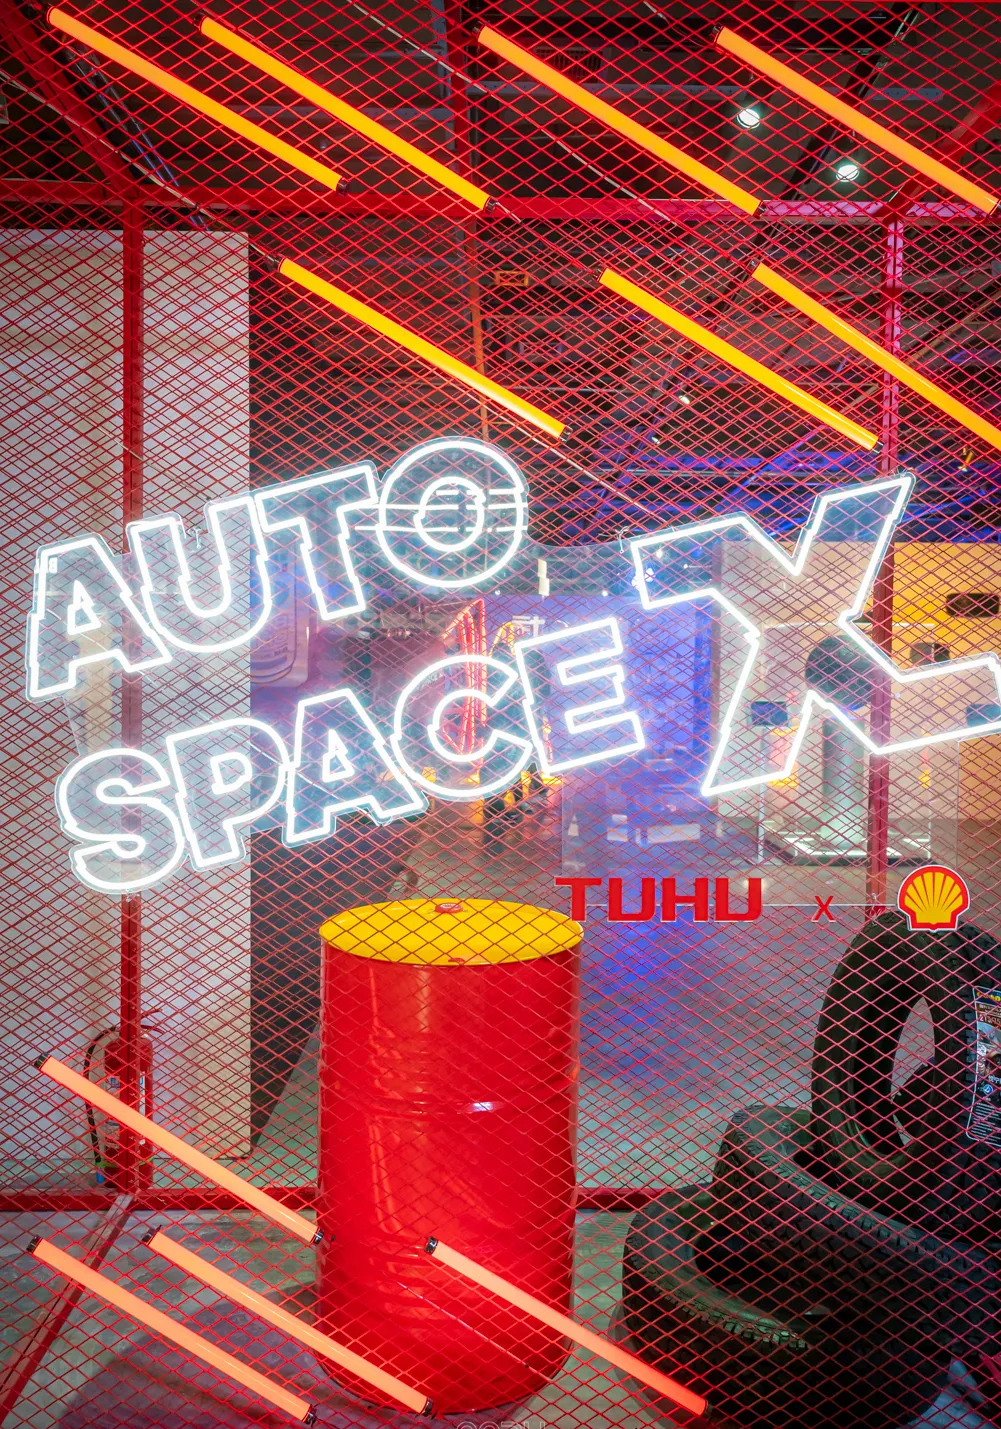 途虎养车Auto Space X艺术展览活动策划重塑汽车的另一种美 美陈网站 美陈前沿 